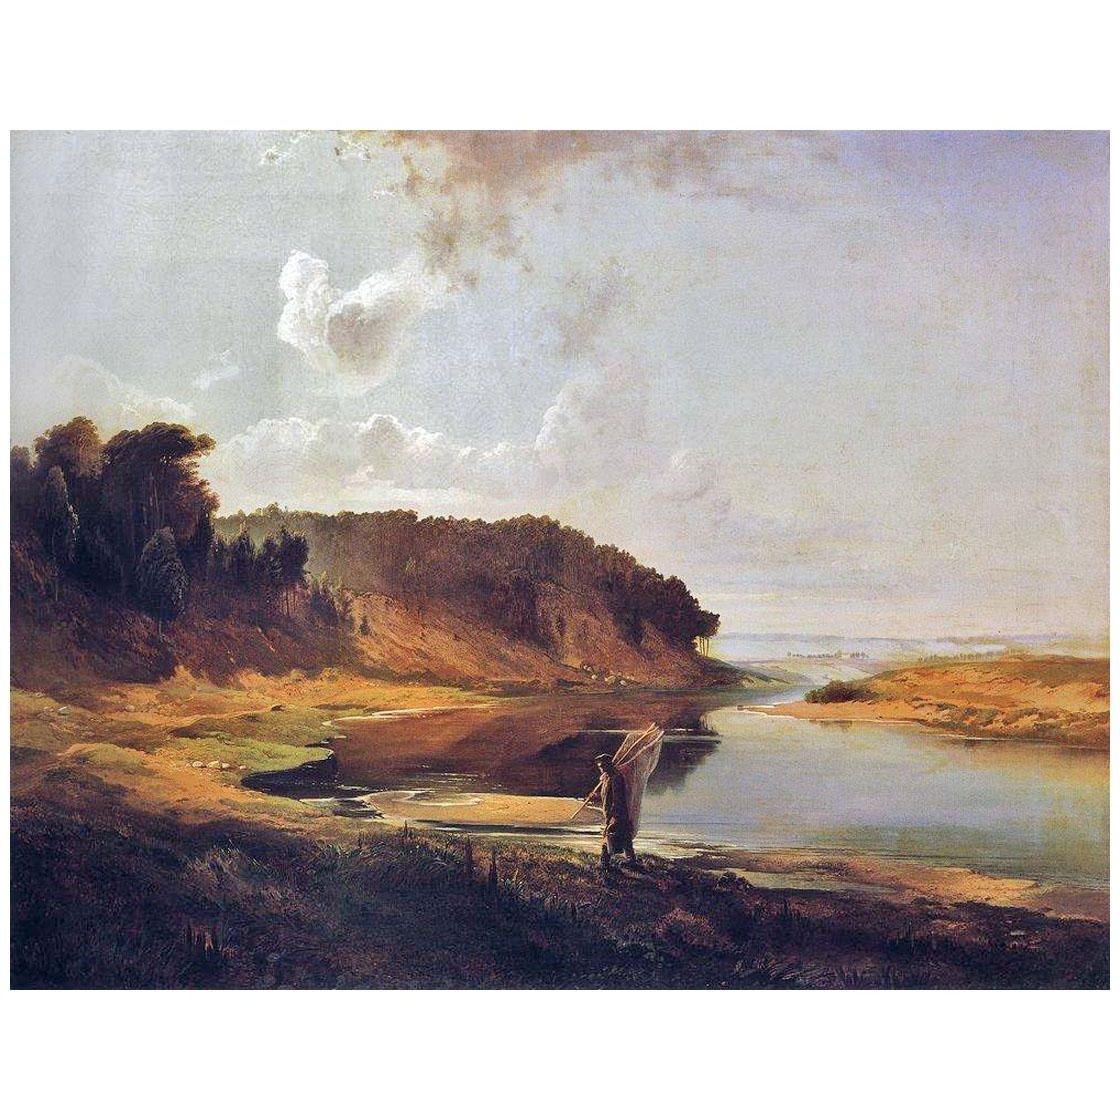 Алексей Саврасов. Пейзаж с рекой и рыбаком. 1859. Национальный музей искусств. Рига